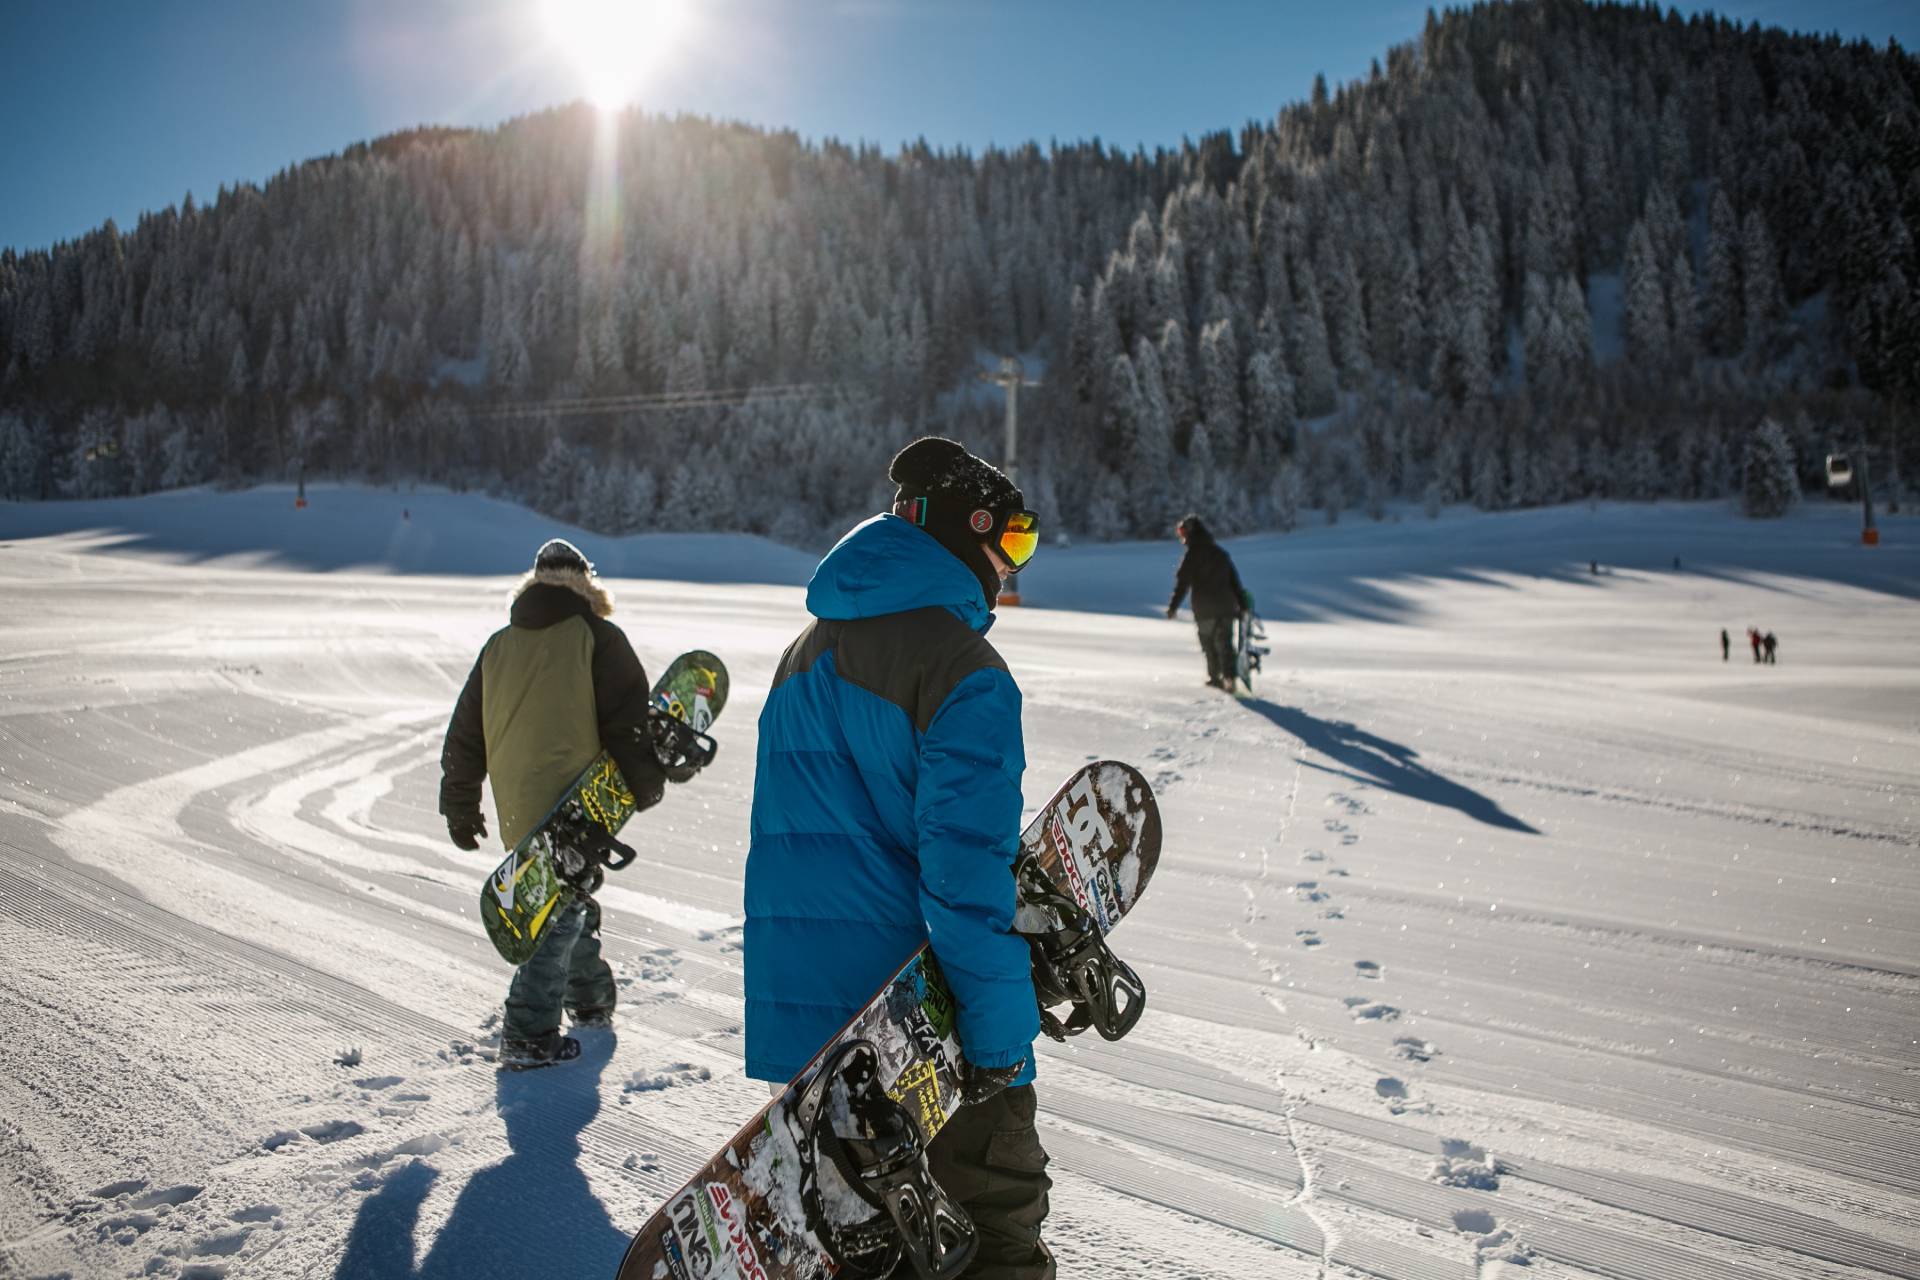 Πρώτη φορά για σκι: Αυτές είναι οι χιονοδρομικές πίστες που θα προτιμήσουμε